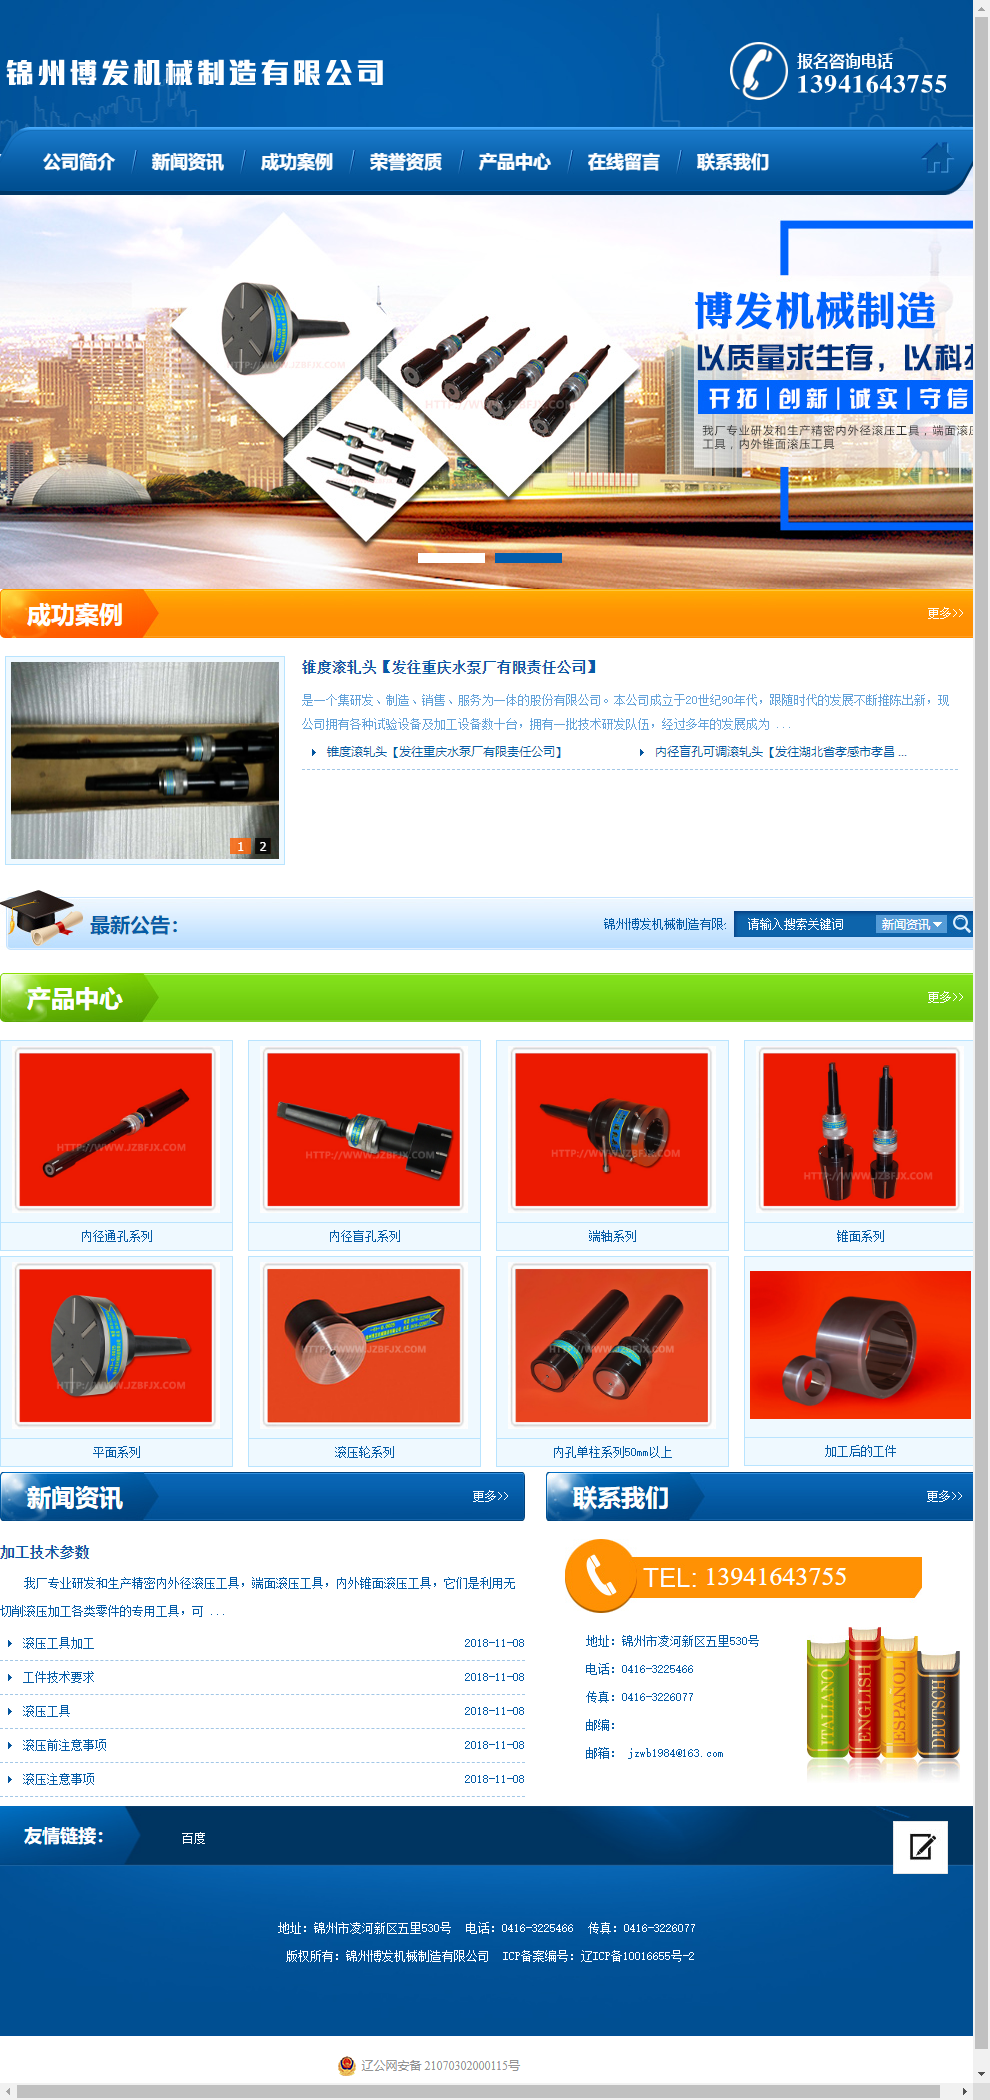 锦州博发机械制造有限公司网站案例